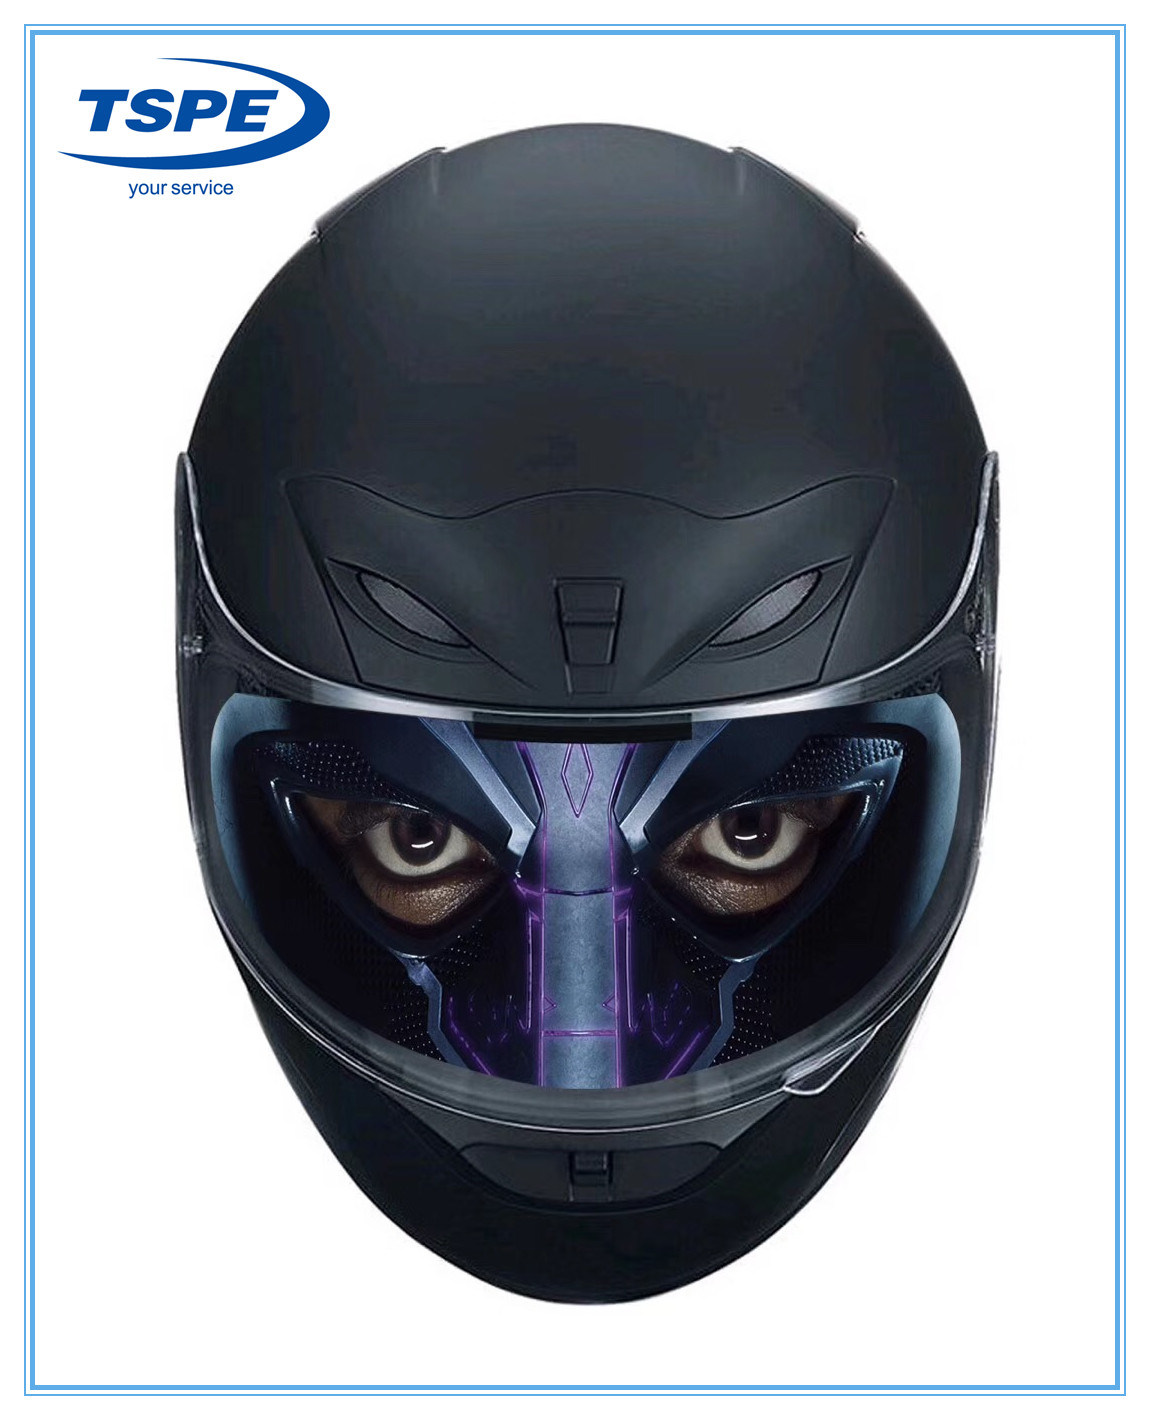 Adhesivo transparente para visera de casco universal de alta calidad